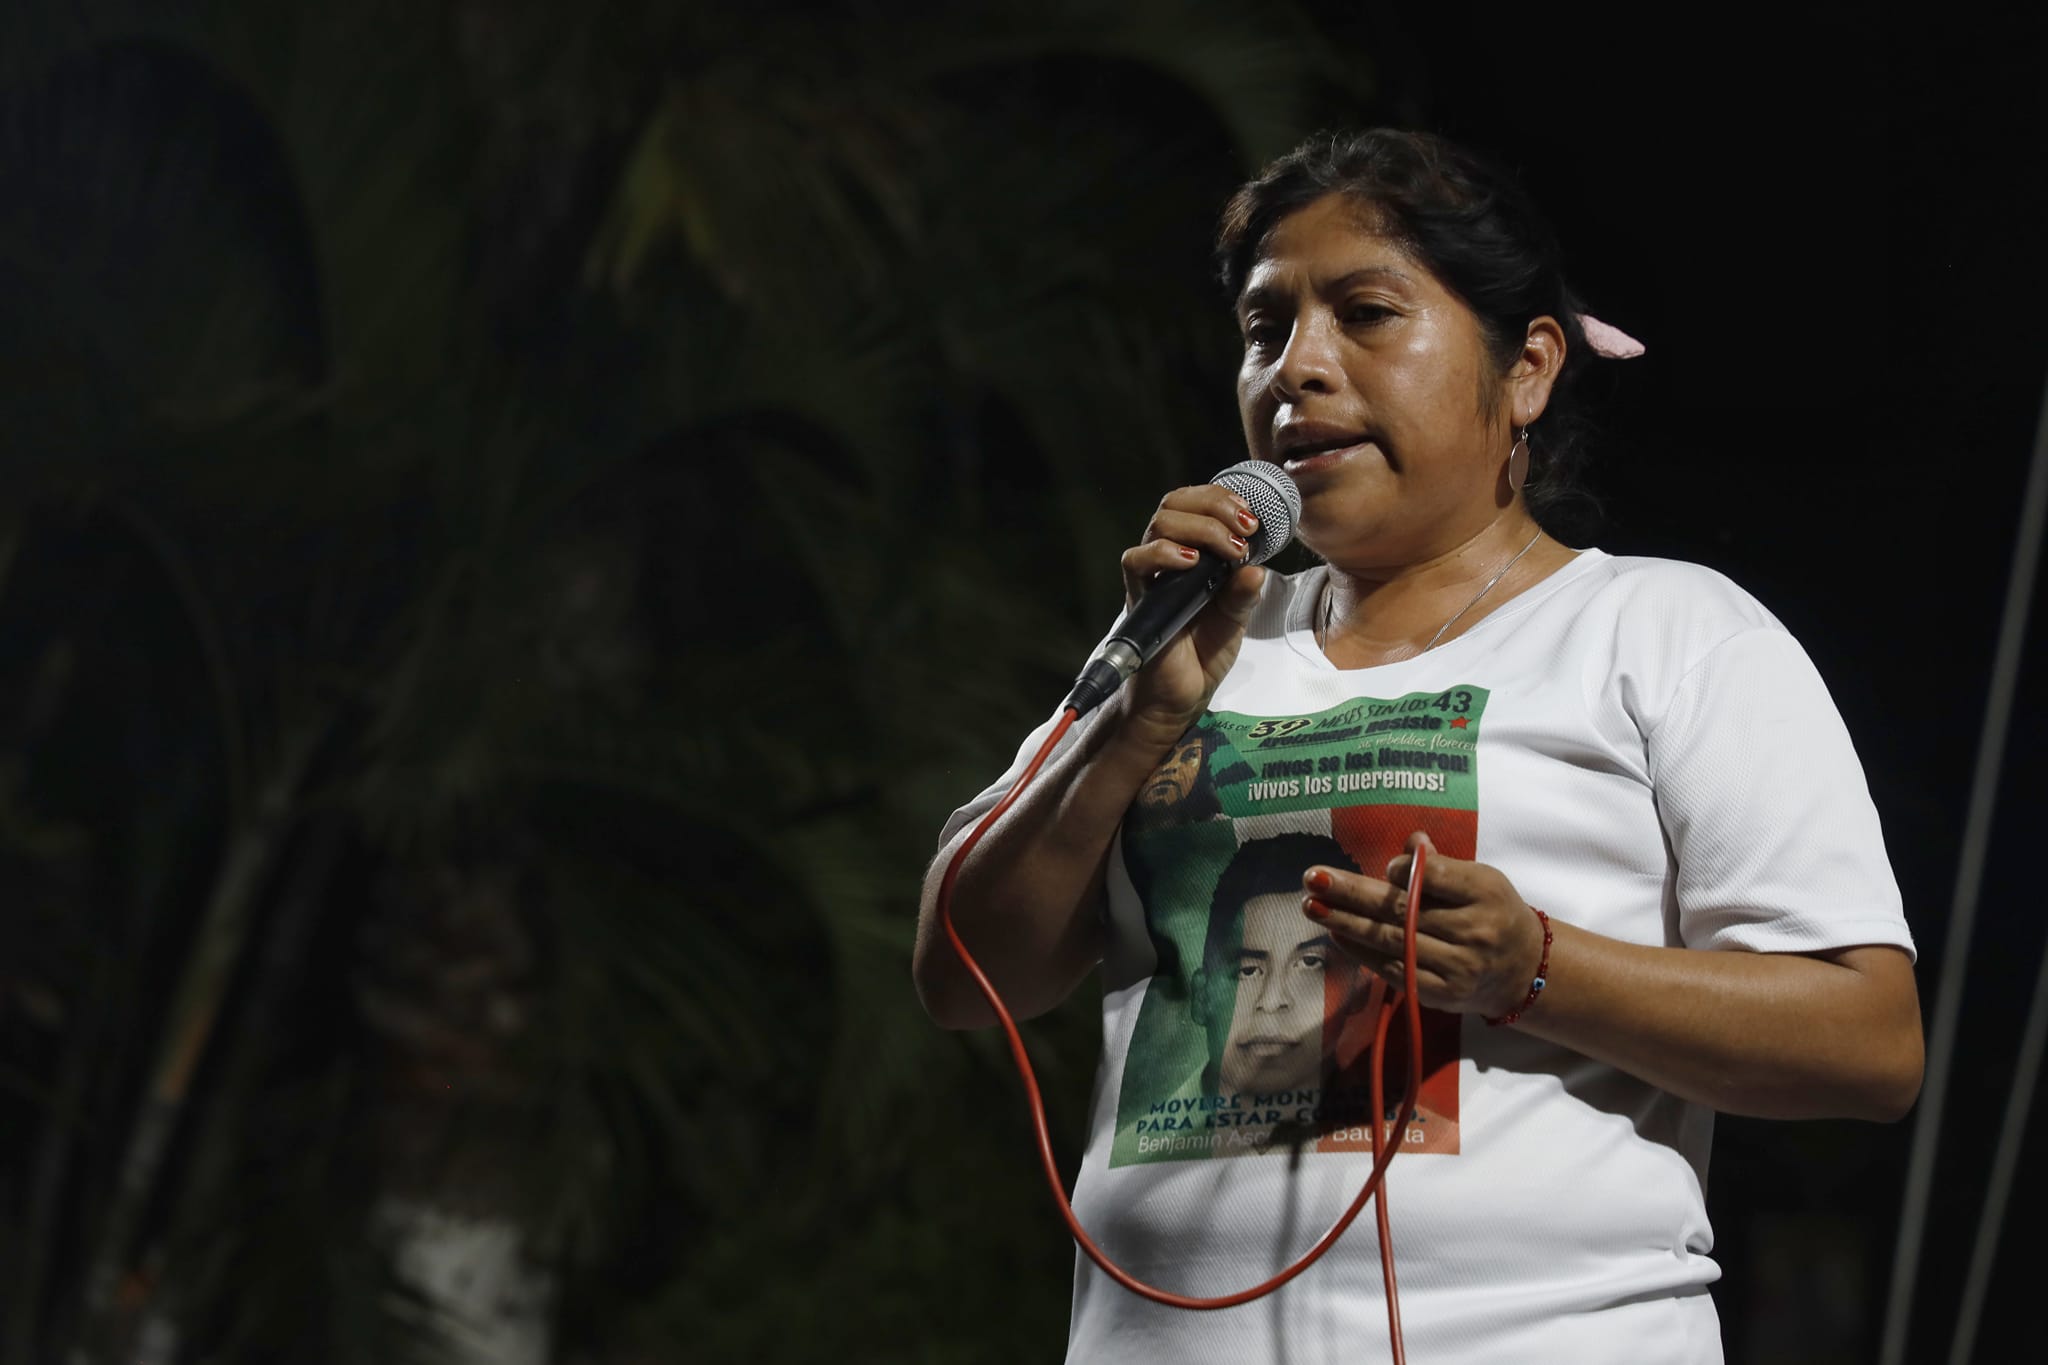 Exigen justicia a ocho años de la ejecución extrajudicial de Antonio Vivar Díaz en Tlapa, Guerrero